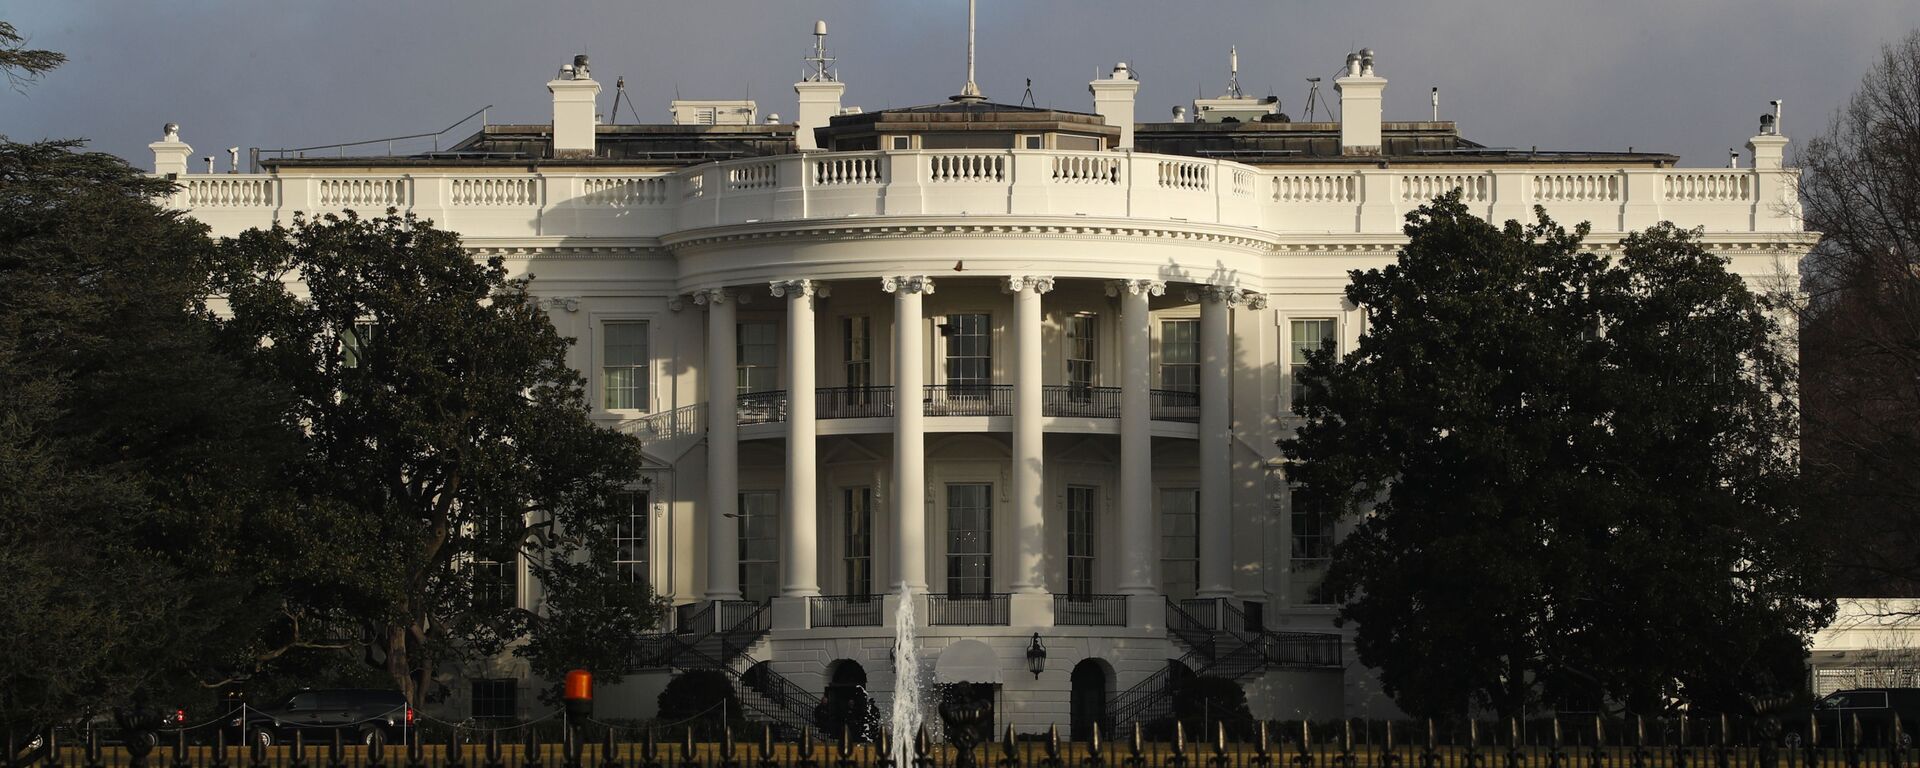 Официальная резиденция президента США - Белый дом - Sputnik Армения, 1920, 22.07.2021